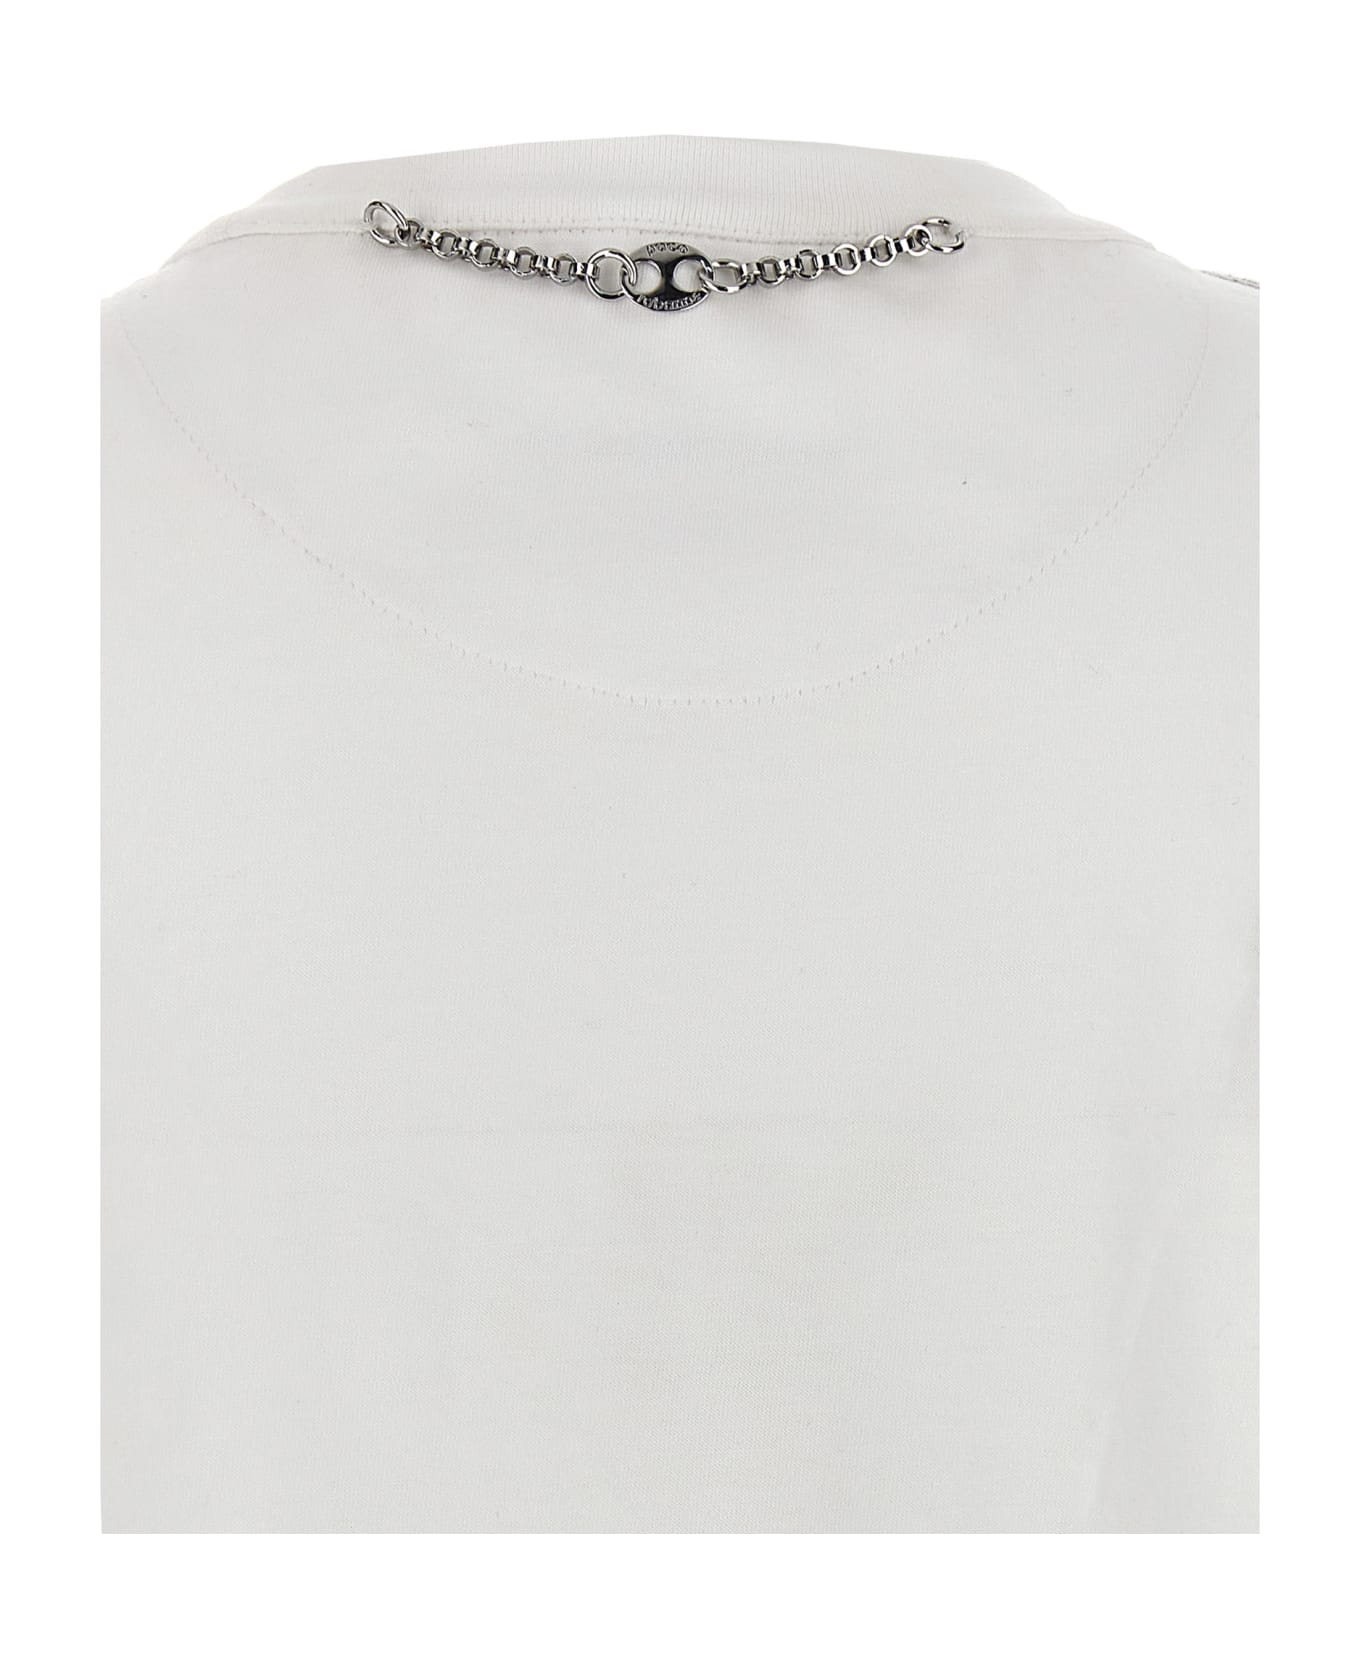 Paco Rabanne Metal Mesh T-shirt - Silver Tシャツ